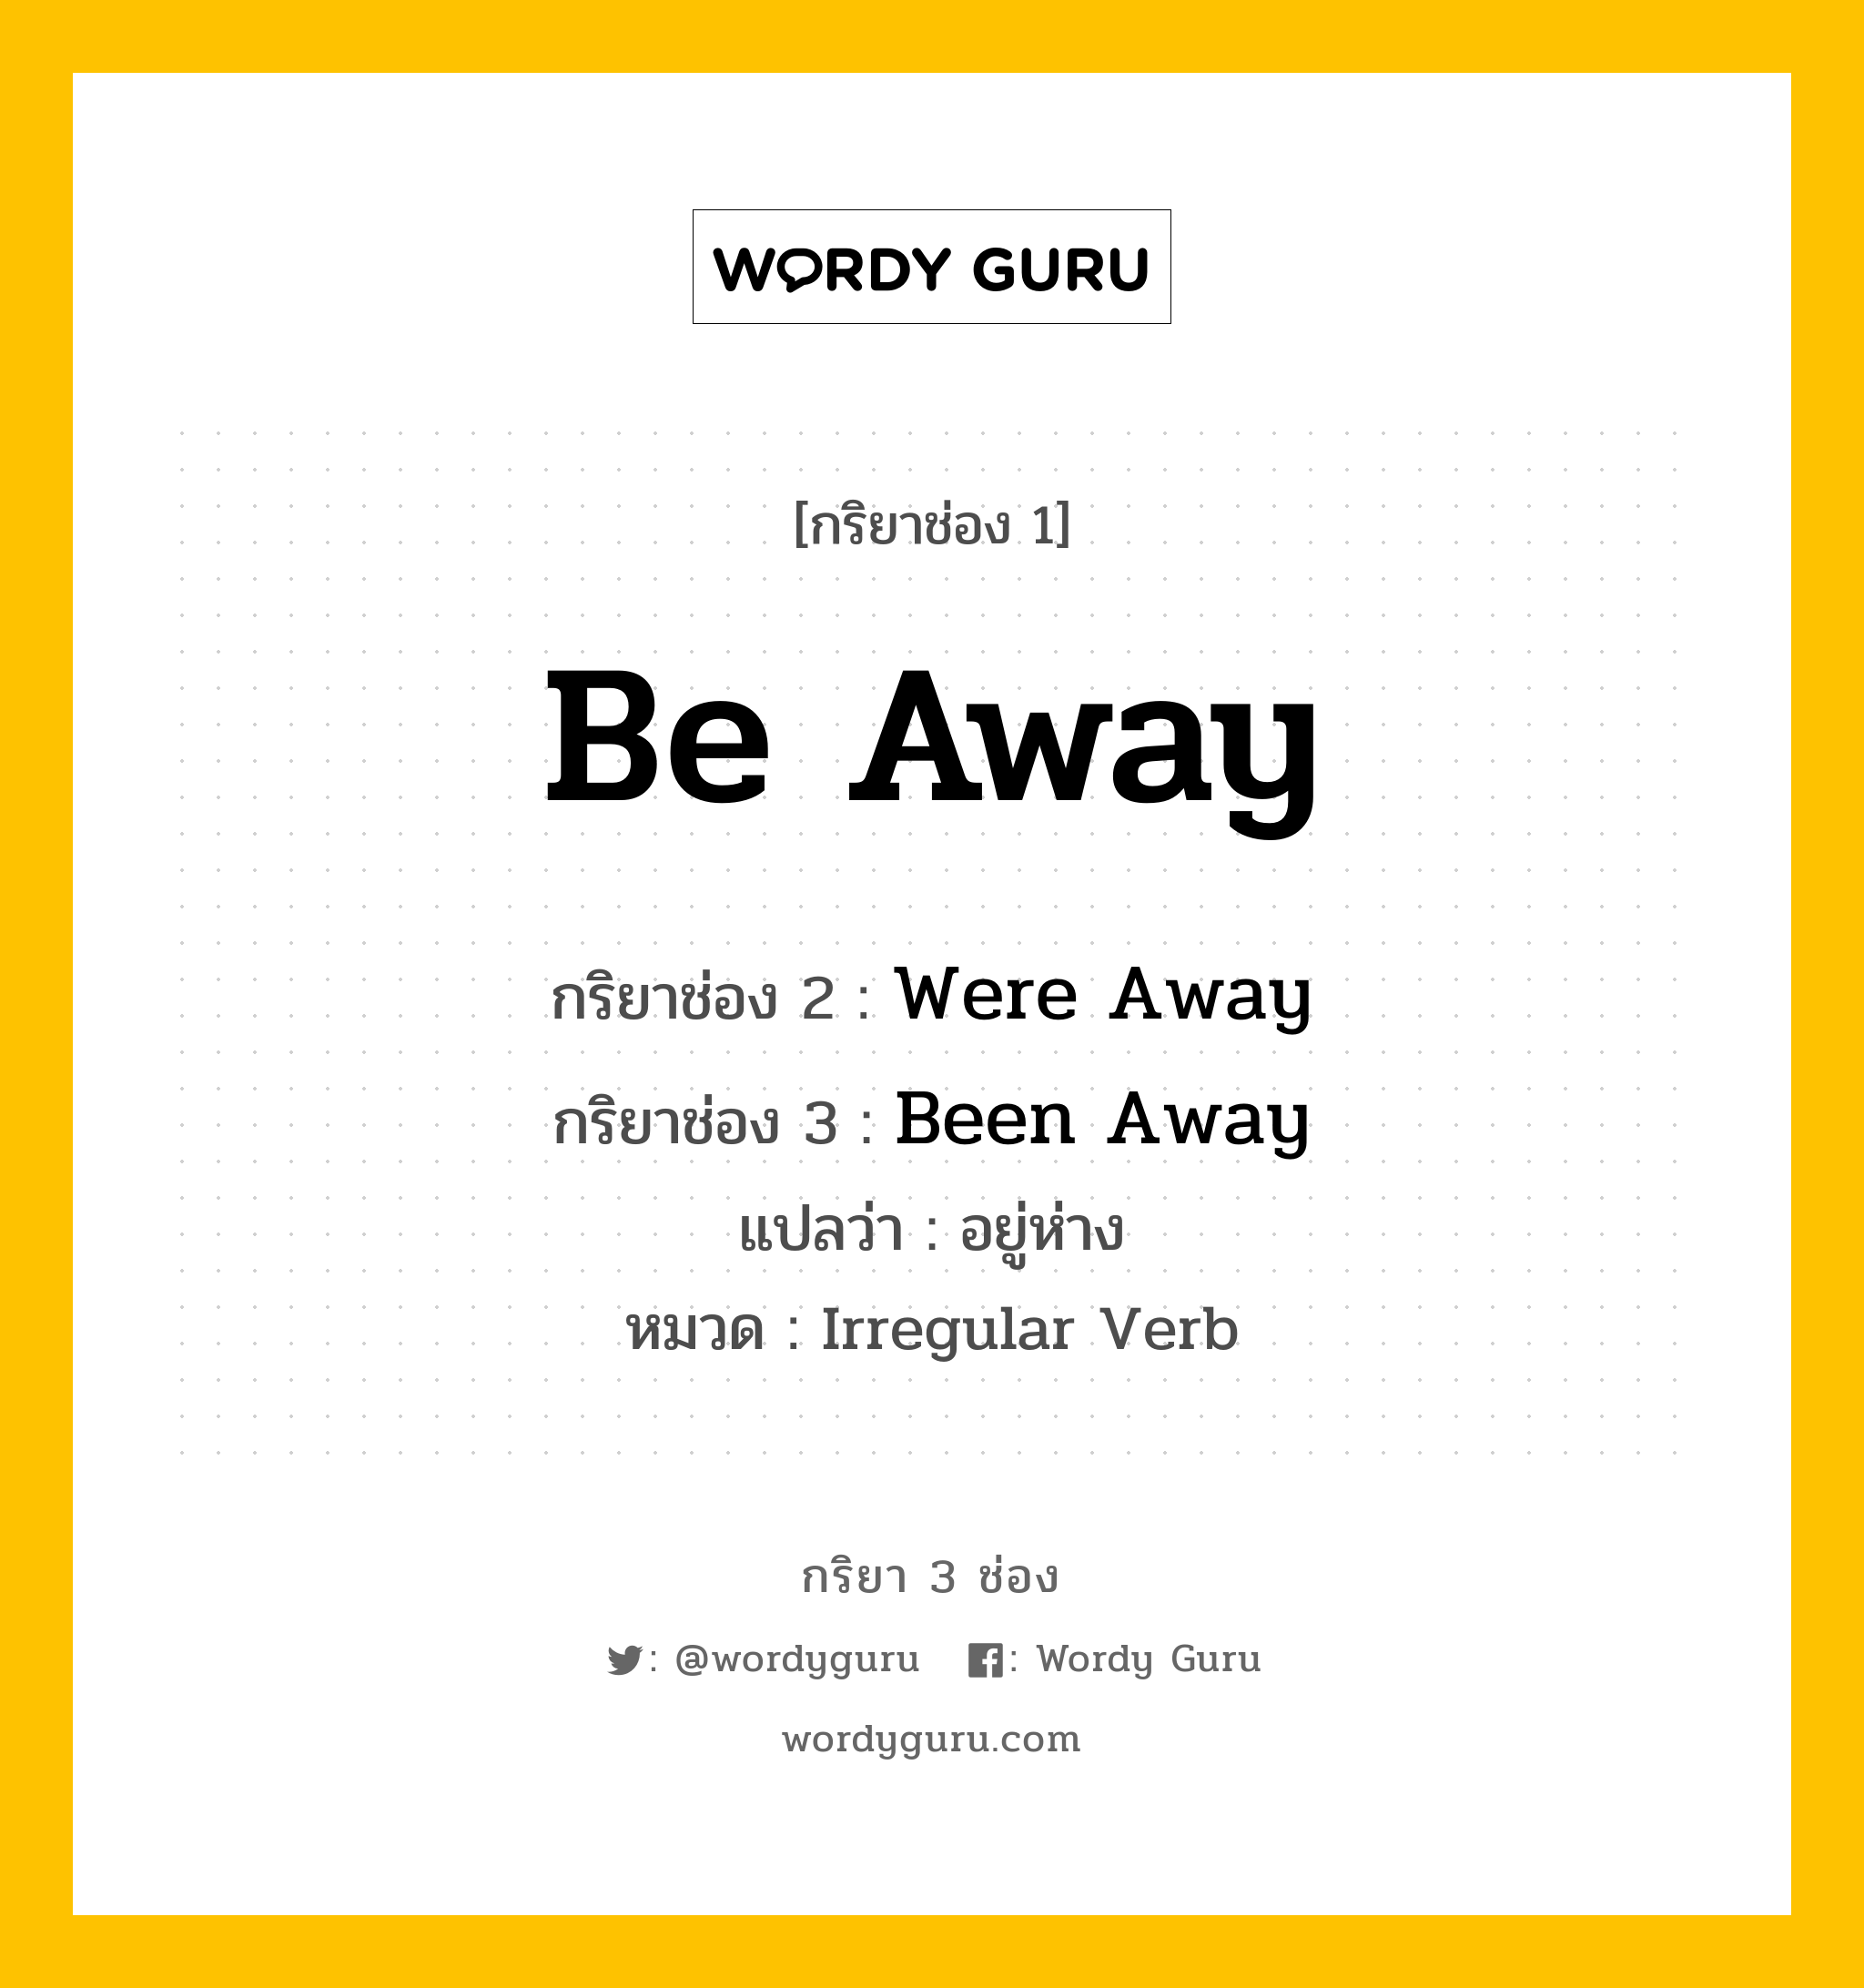 กริยา 3 ช่อง: Be Away ช่อง 2 Be Away ช่อง 3 คืออะไร, กริยาช่อง 1 Be Away กริยาช่อง 2 Were Away กริยาช่อง 3 Been Away แปลว่า อยู่ห่าง หมวด Irregular Verb หมวด Irregular Verb